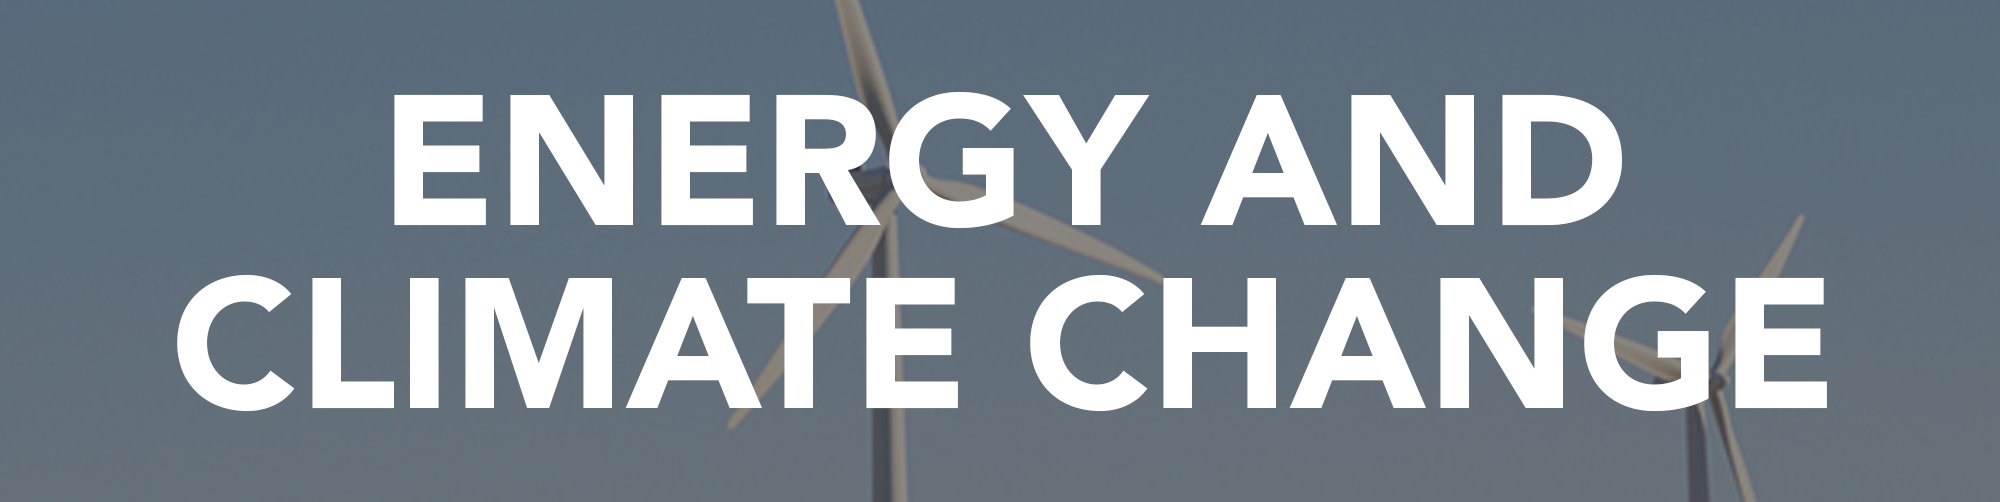 Informationen und Artikel zu Energie und Klimawandel